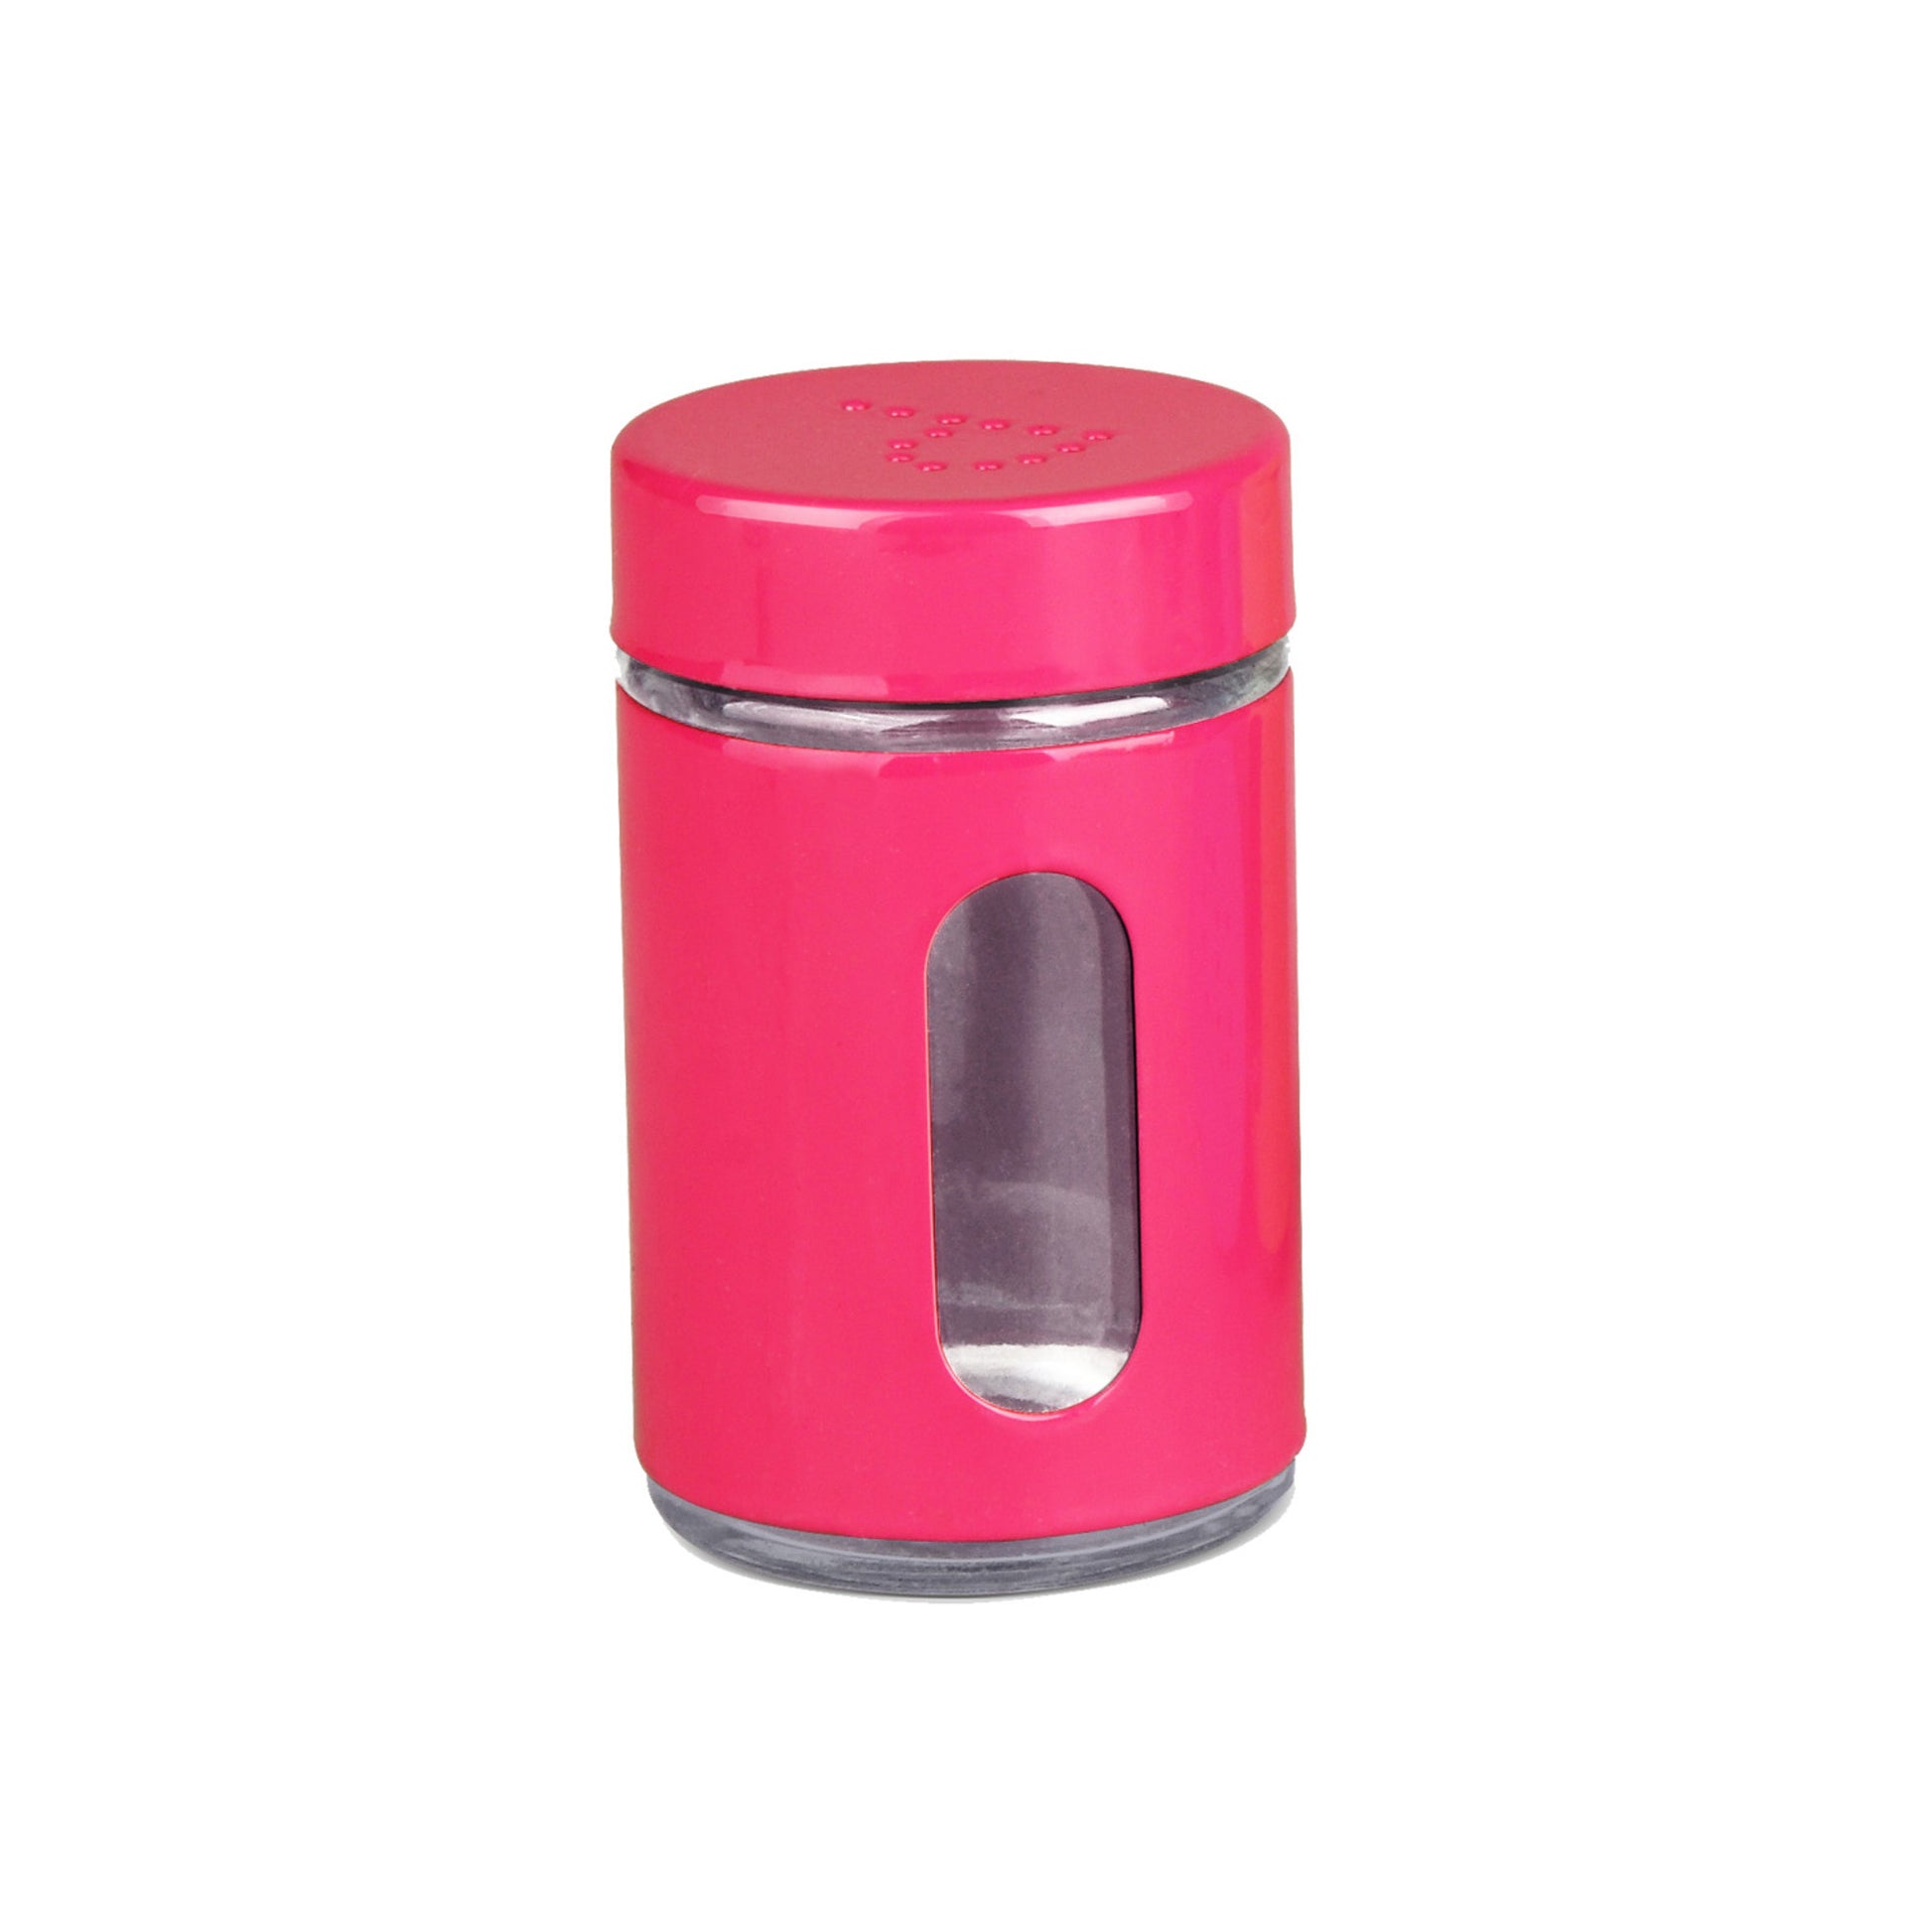 Home Basics Salt & Pepper Shaker - Pink